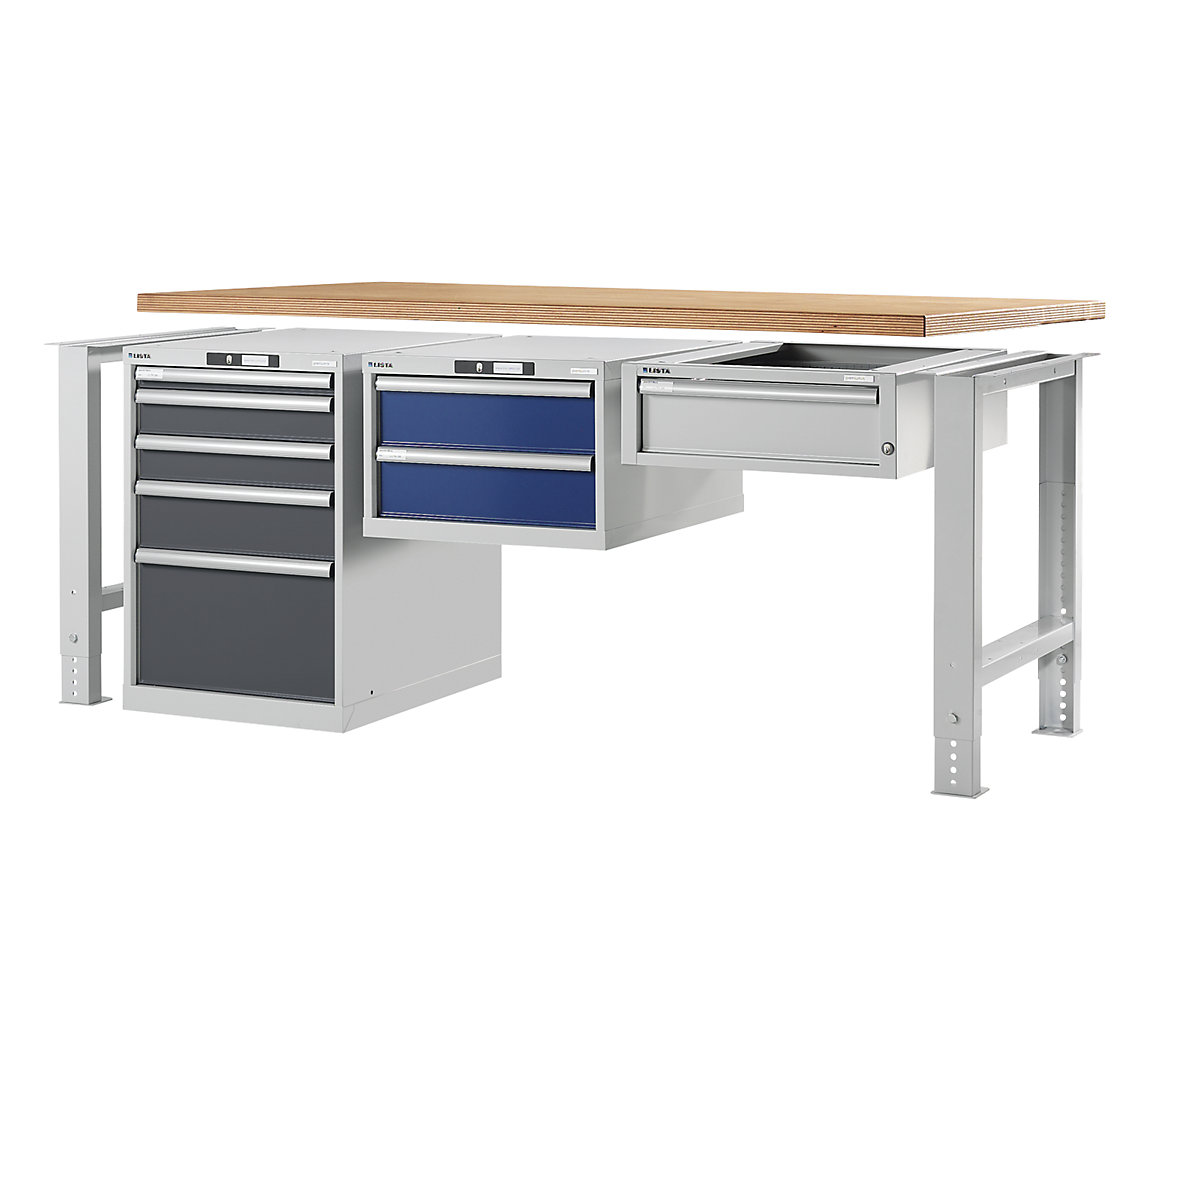 Stół warsztatowy w systemie modułowym, szafka dolna – LISTA (Zdjęcie produktu 11)-10